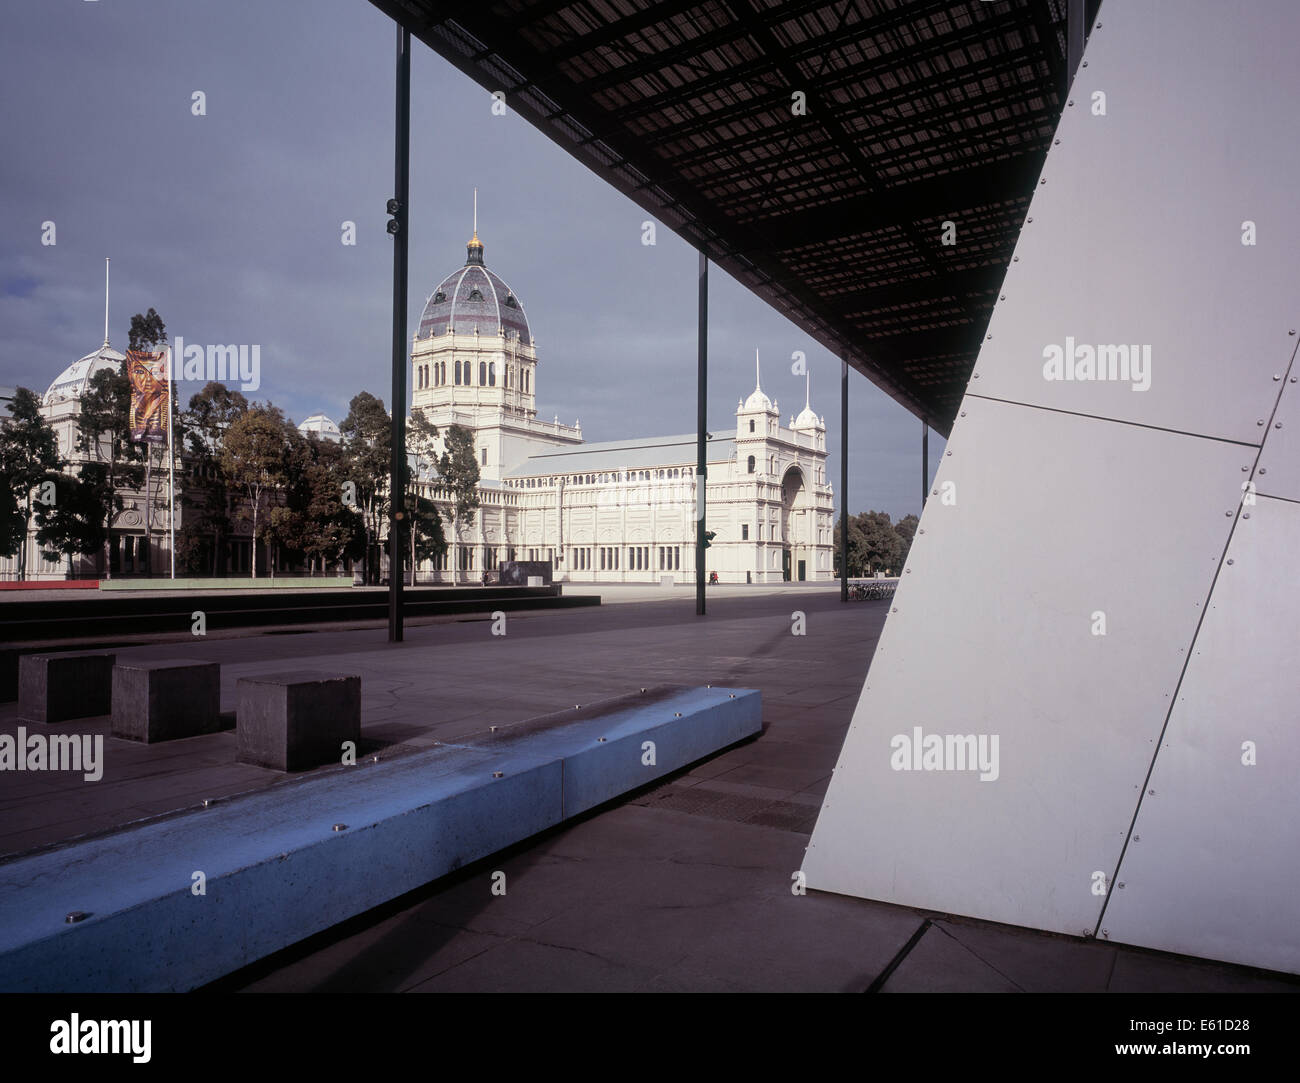 Le contraste de la musée de Melbourne et moderne le palais royal des expositions à l'arrière. Banque D'Images